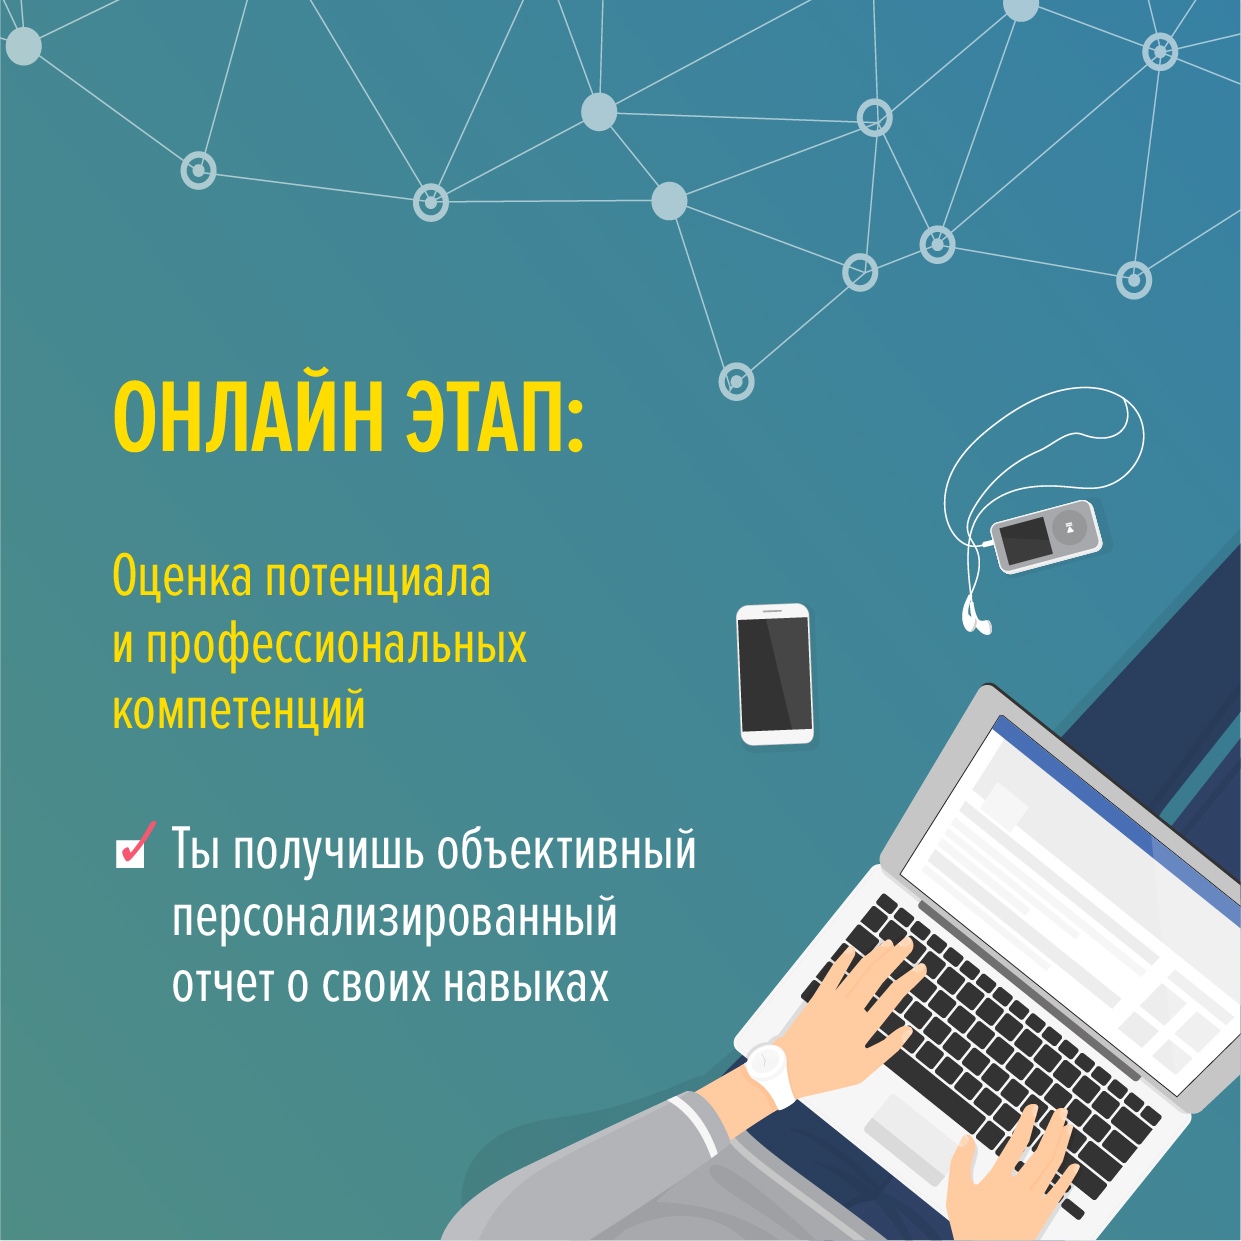 На конкурсе digital-специалистов ярославцев ждут очные и онлайн-этапы